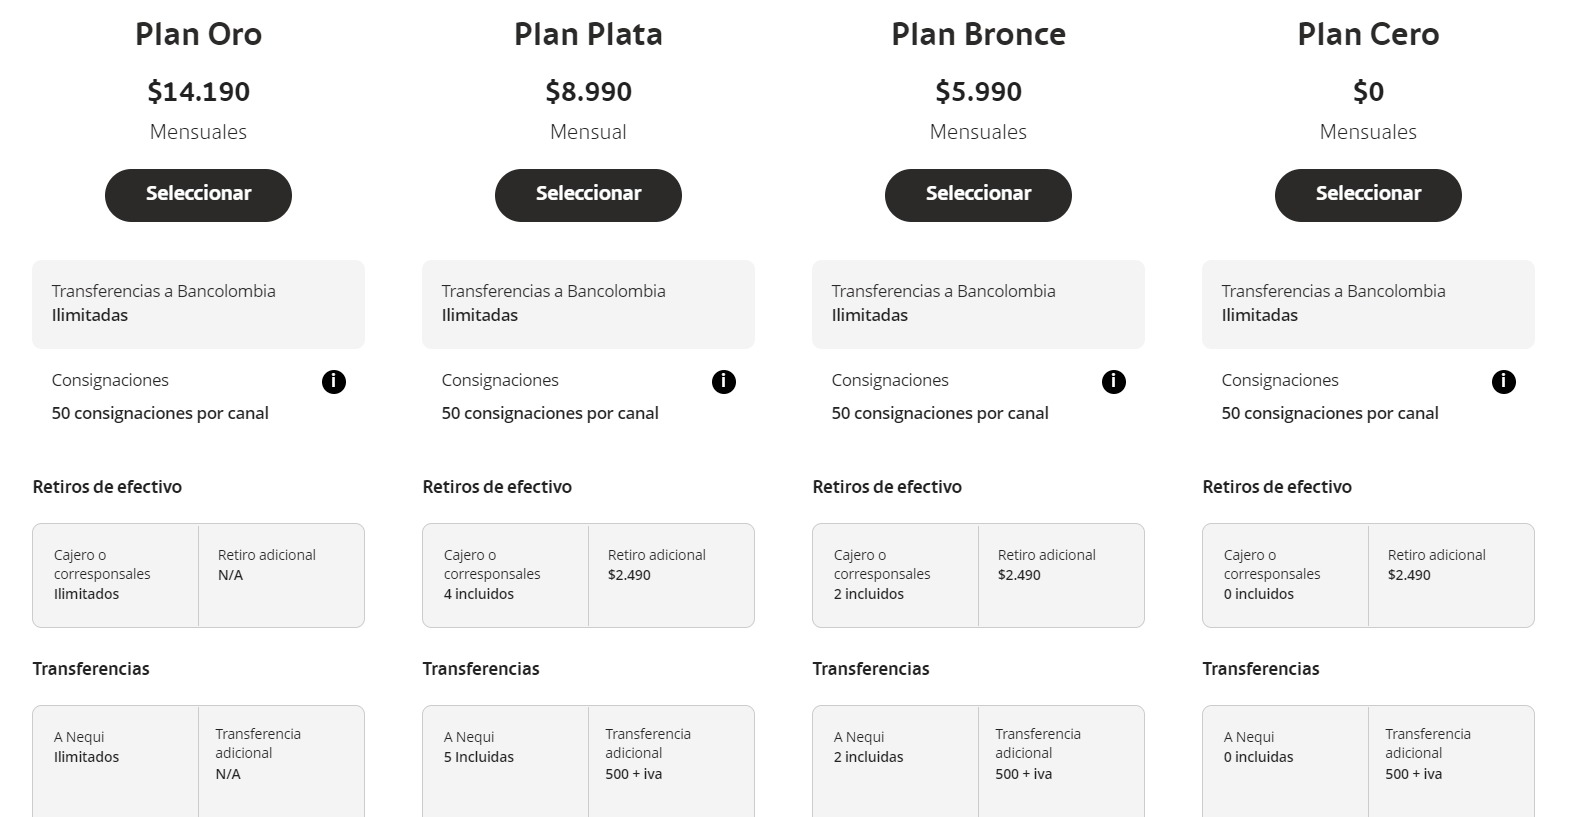 Planes que ofrece Bancolombia.